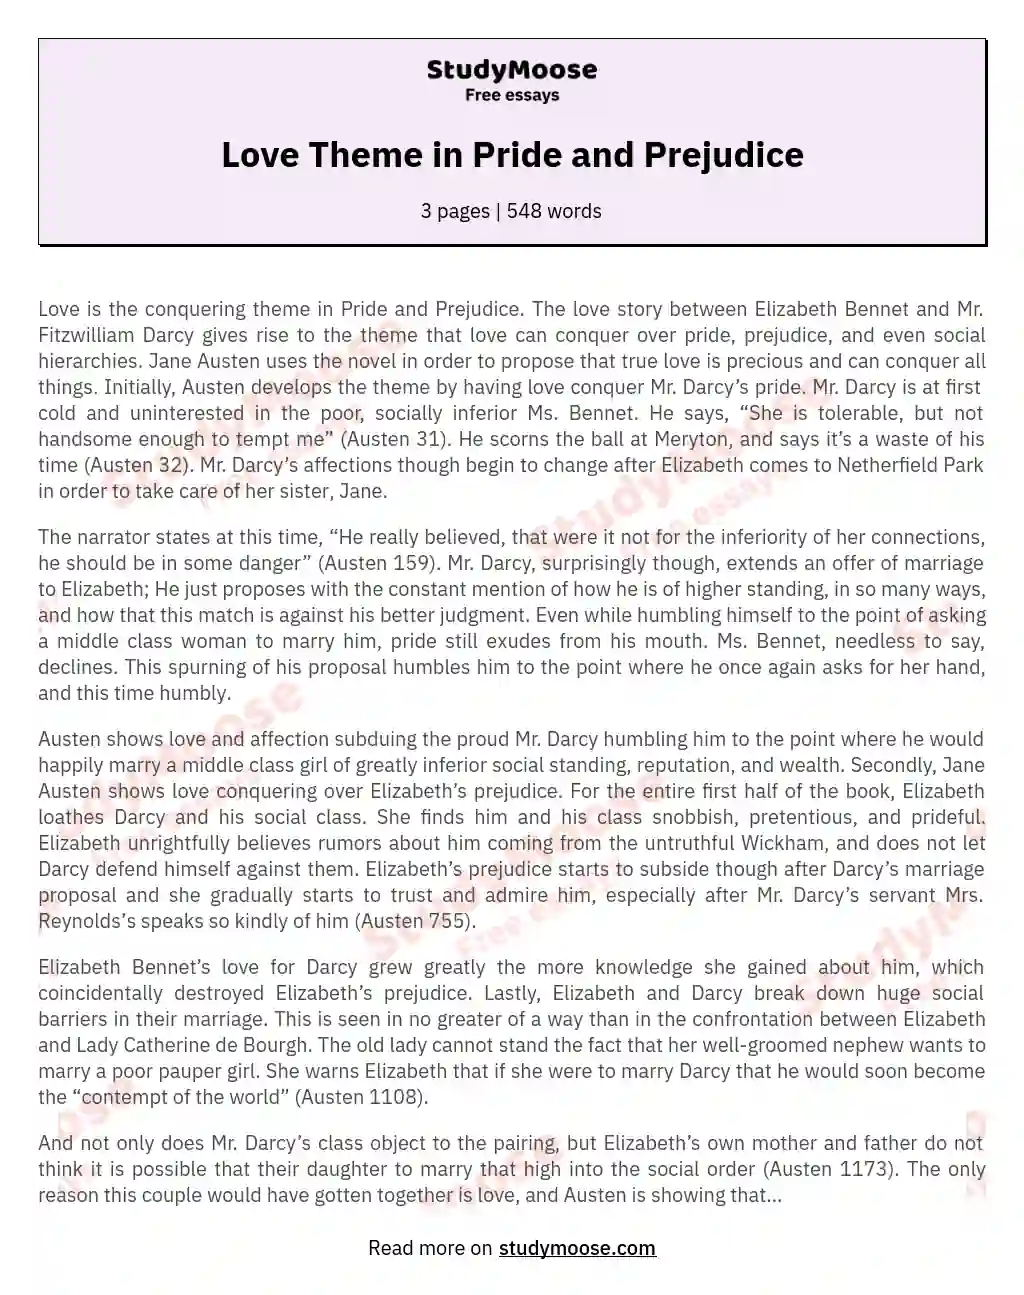 Love Theme in Pride and Prejudice essay